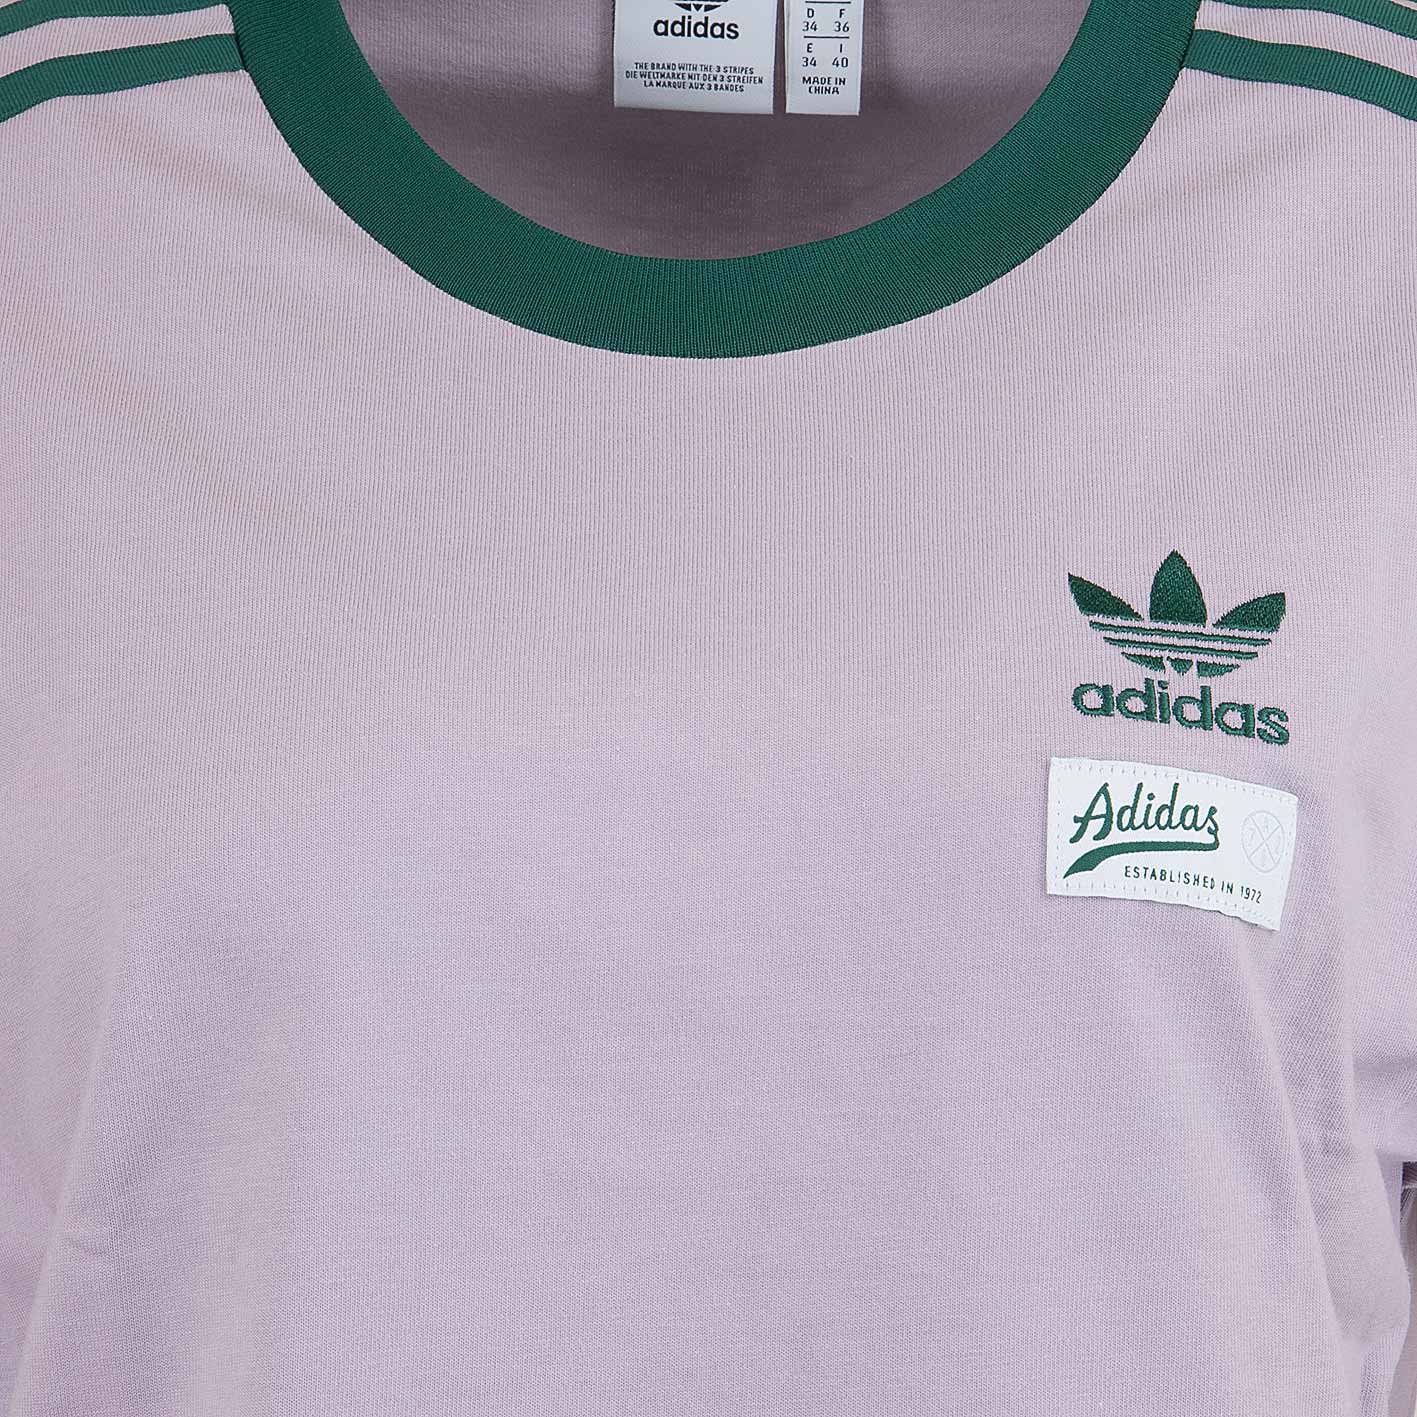 ☆ Adidas Originals Damen T-Shirt 3-Stripes lila - hier bestellen!